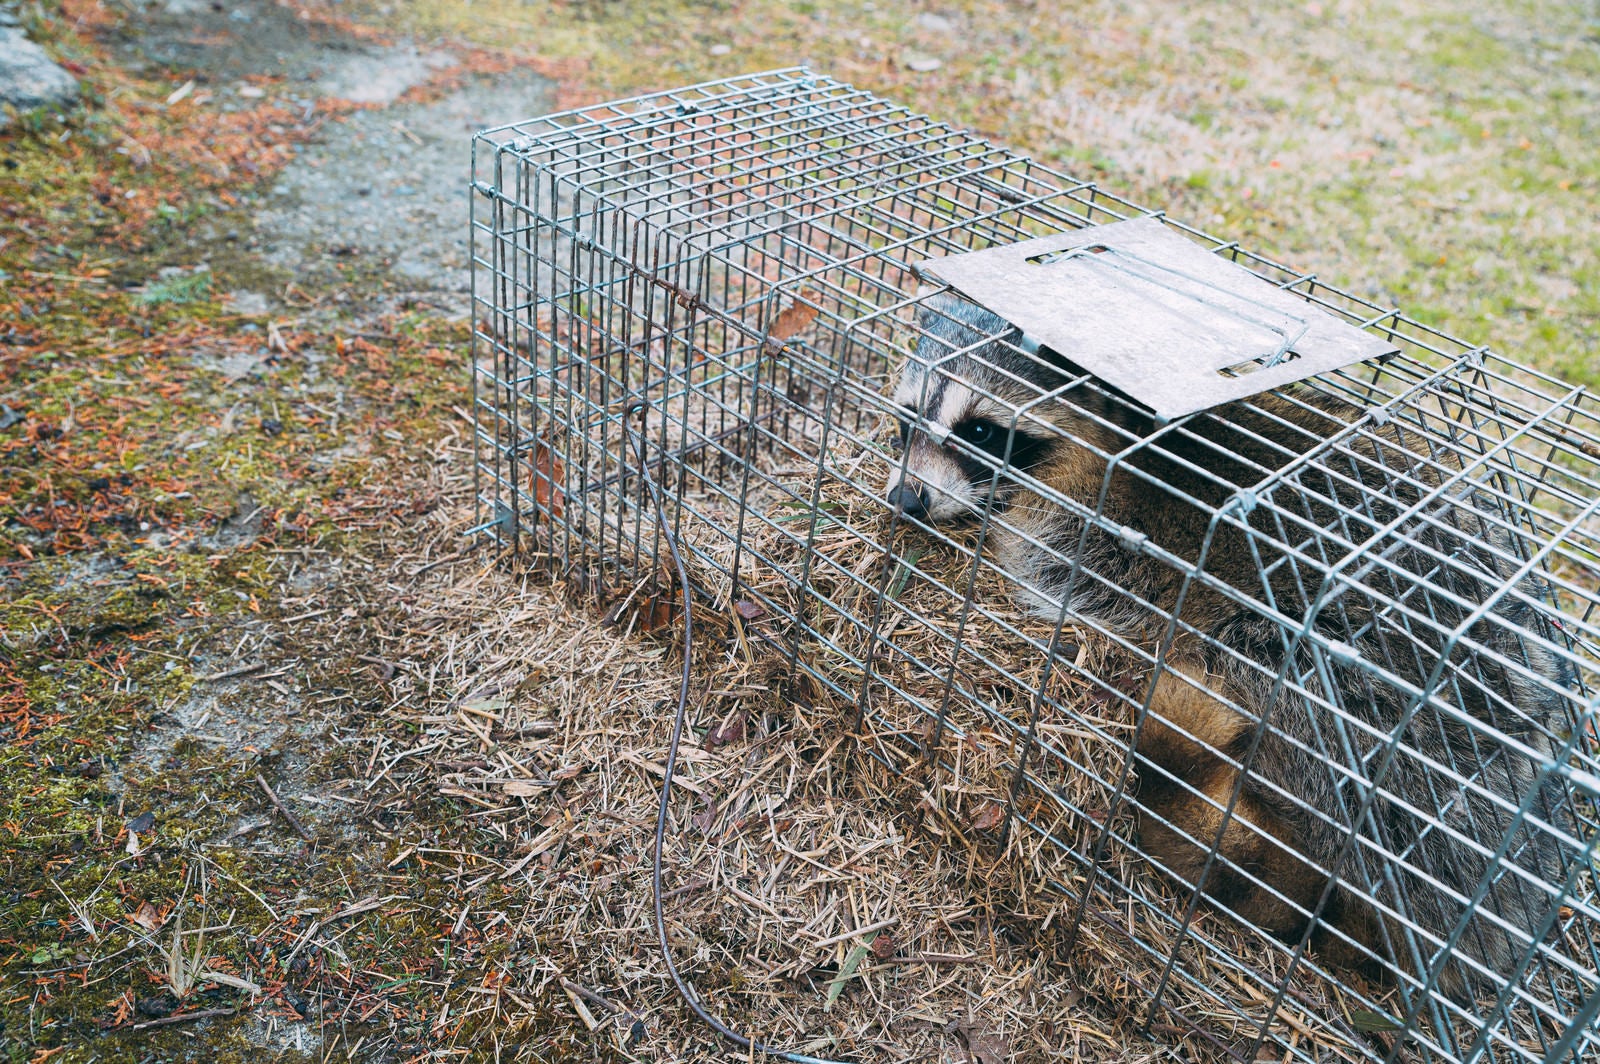 「農作物被害で捕獲されたアライグマ」の写真